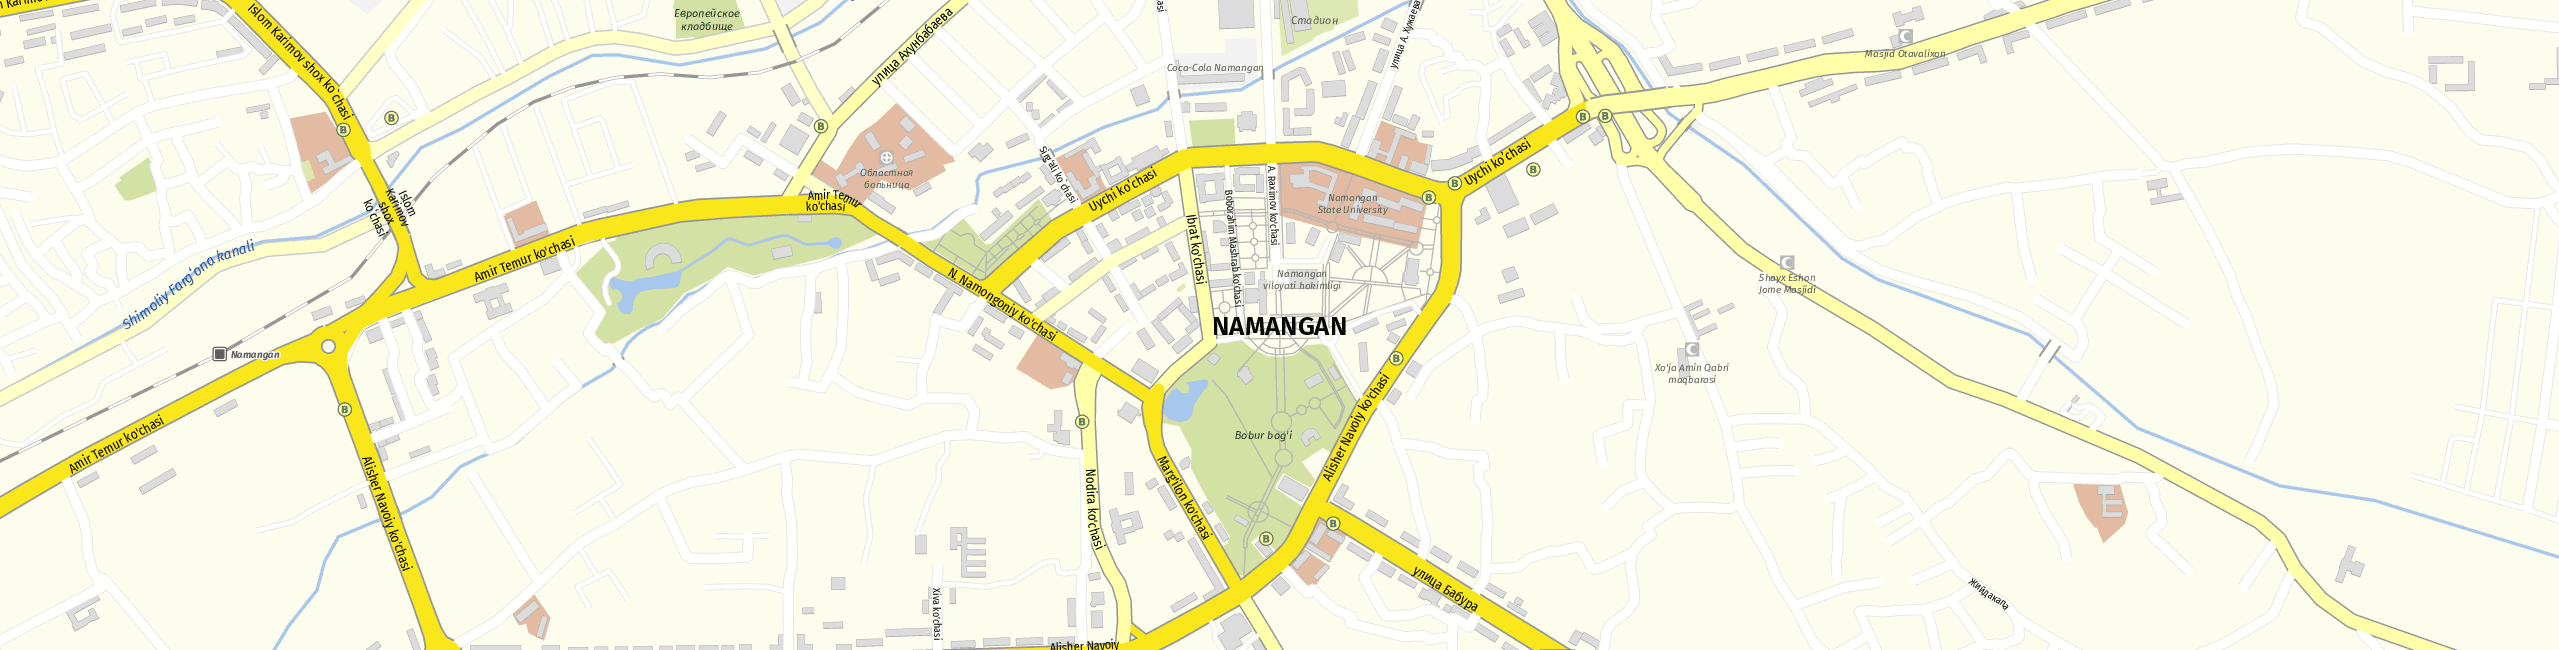 Stadtplan Namangan zum Downloaden.